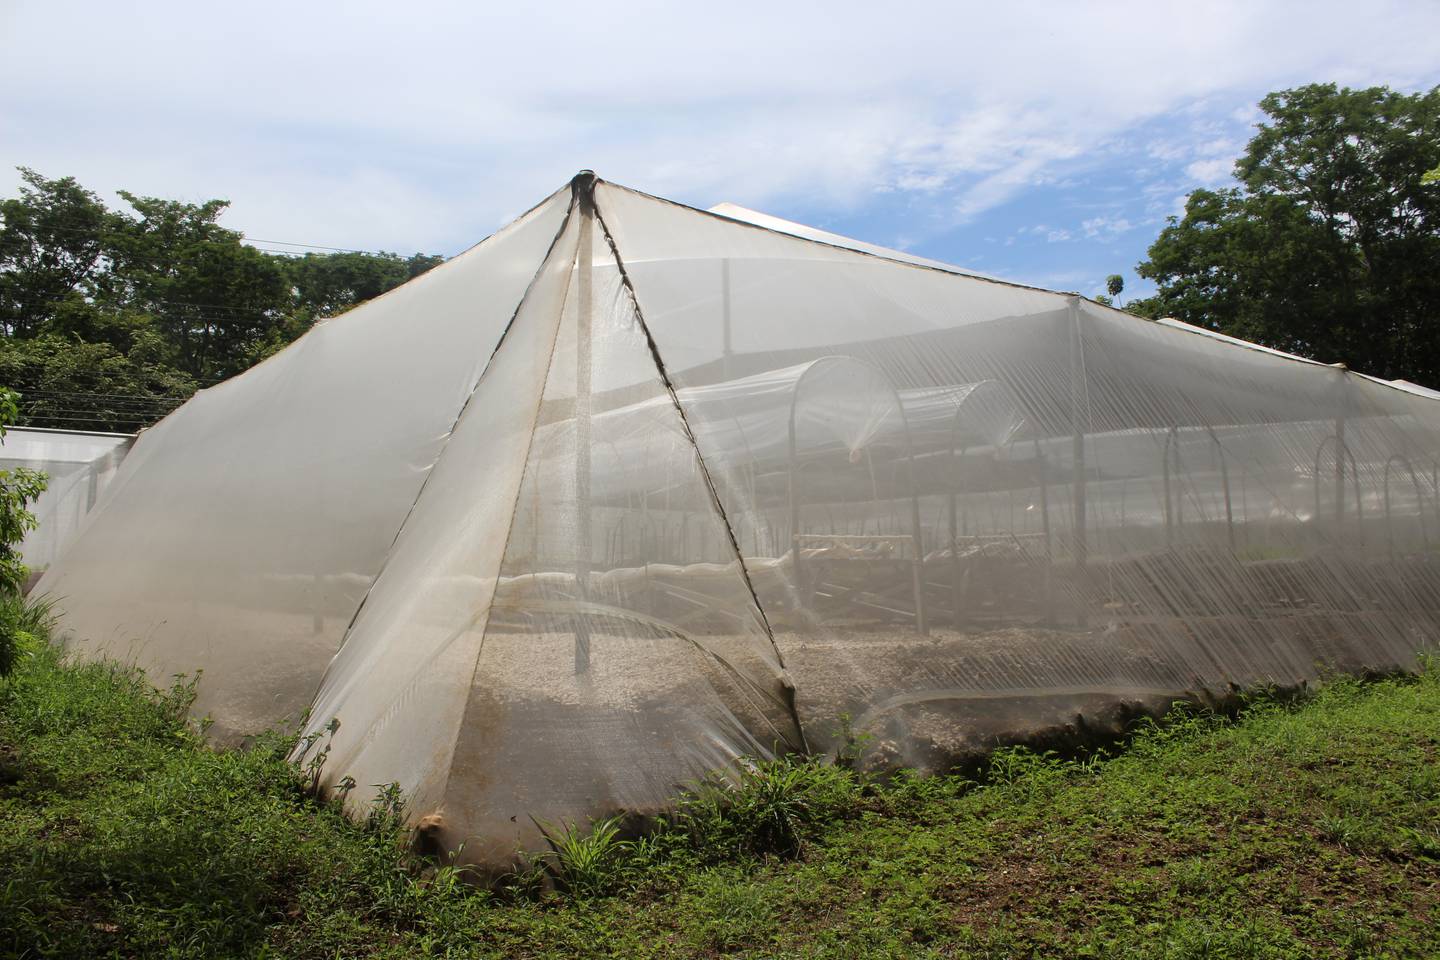 La casa malla está cubierta por una malla antiáfido o antinsectos, para repelar la cantidad de plagas y no usar insecticidas.